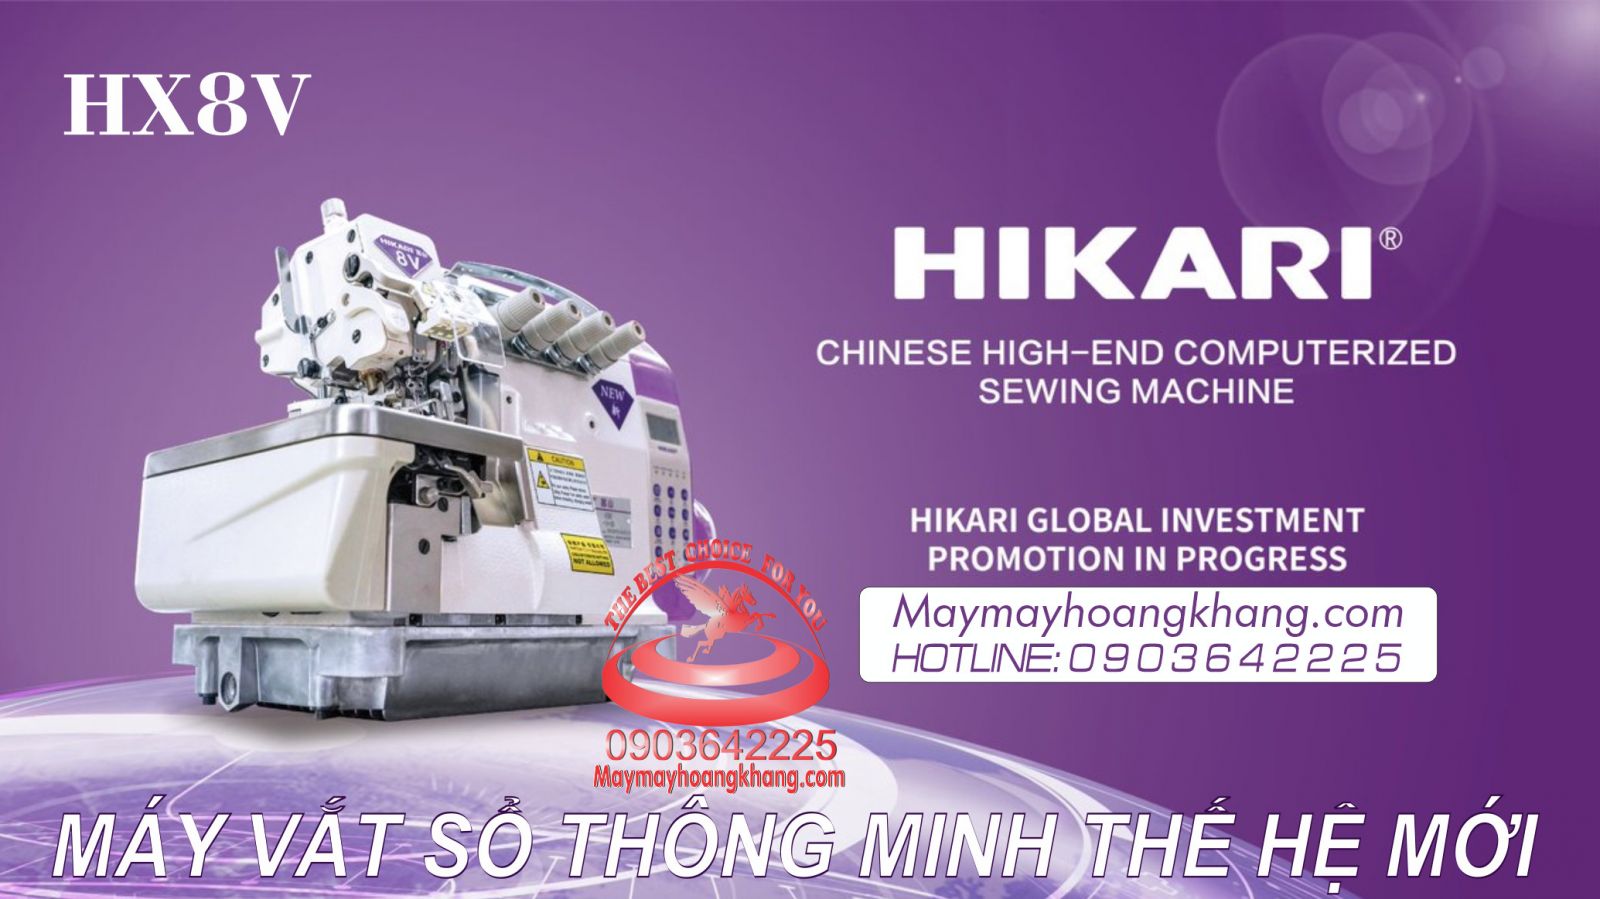 HIKARI HX-8V-14-03C